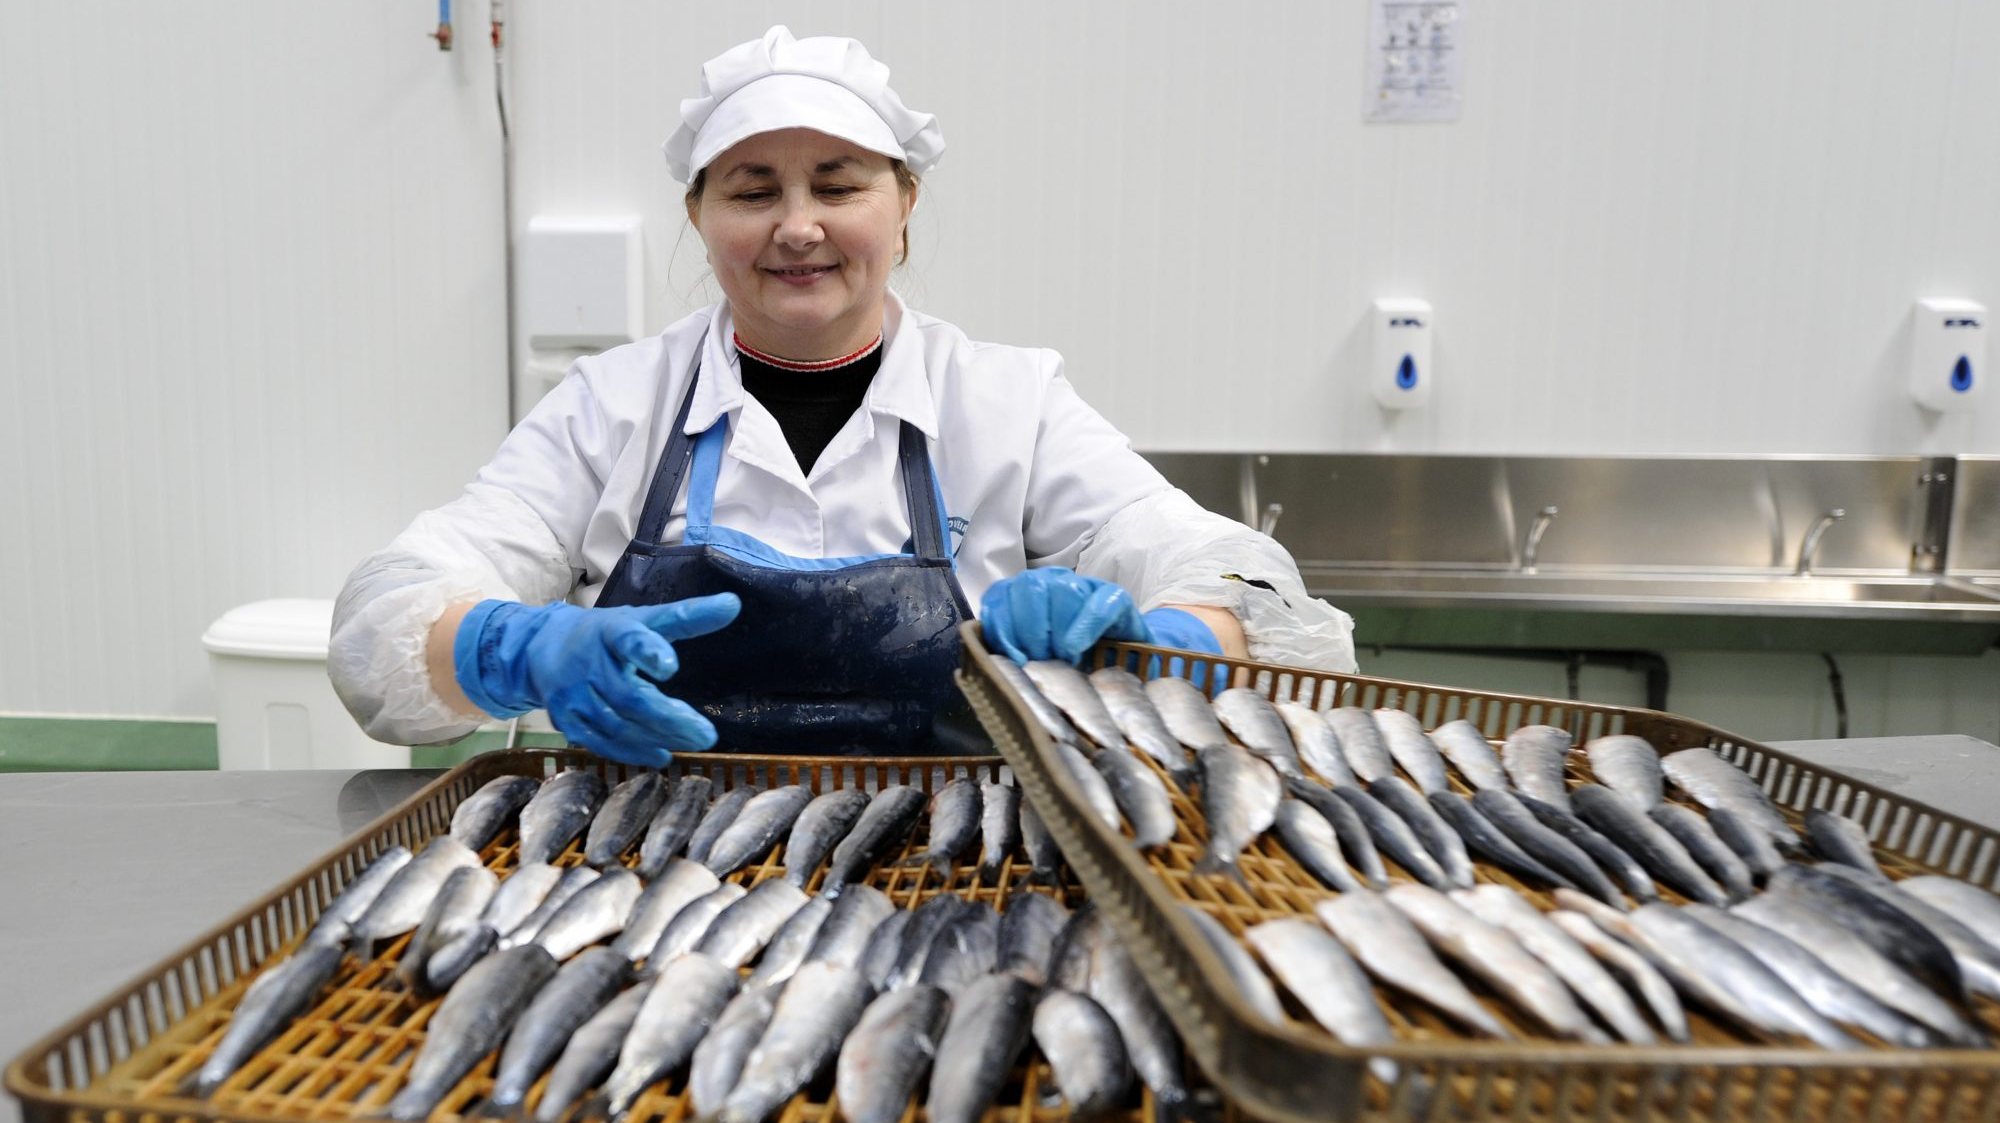 Ingestão de peixes gordos, como sardinha, são uma das recomendações para prevenir carência de vitamina D